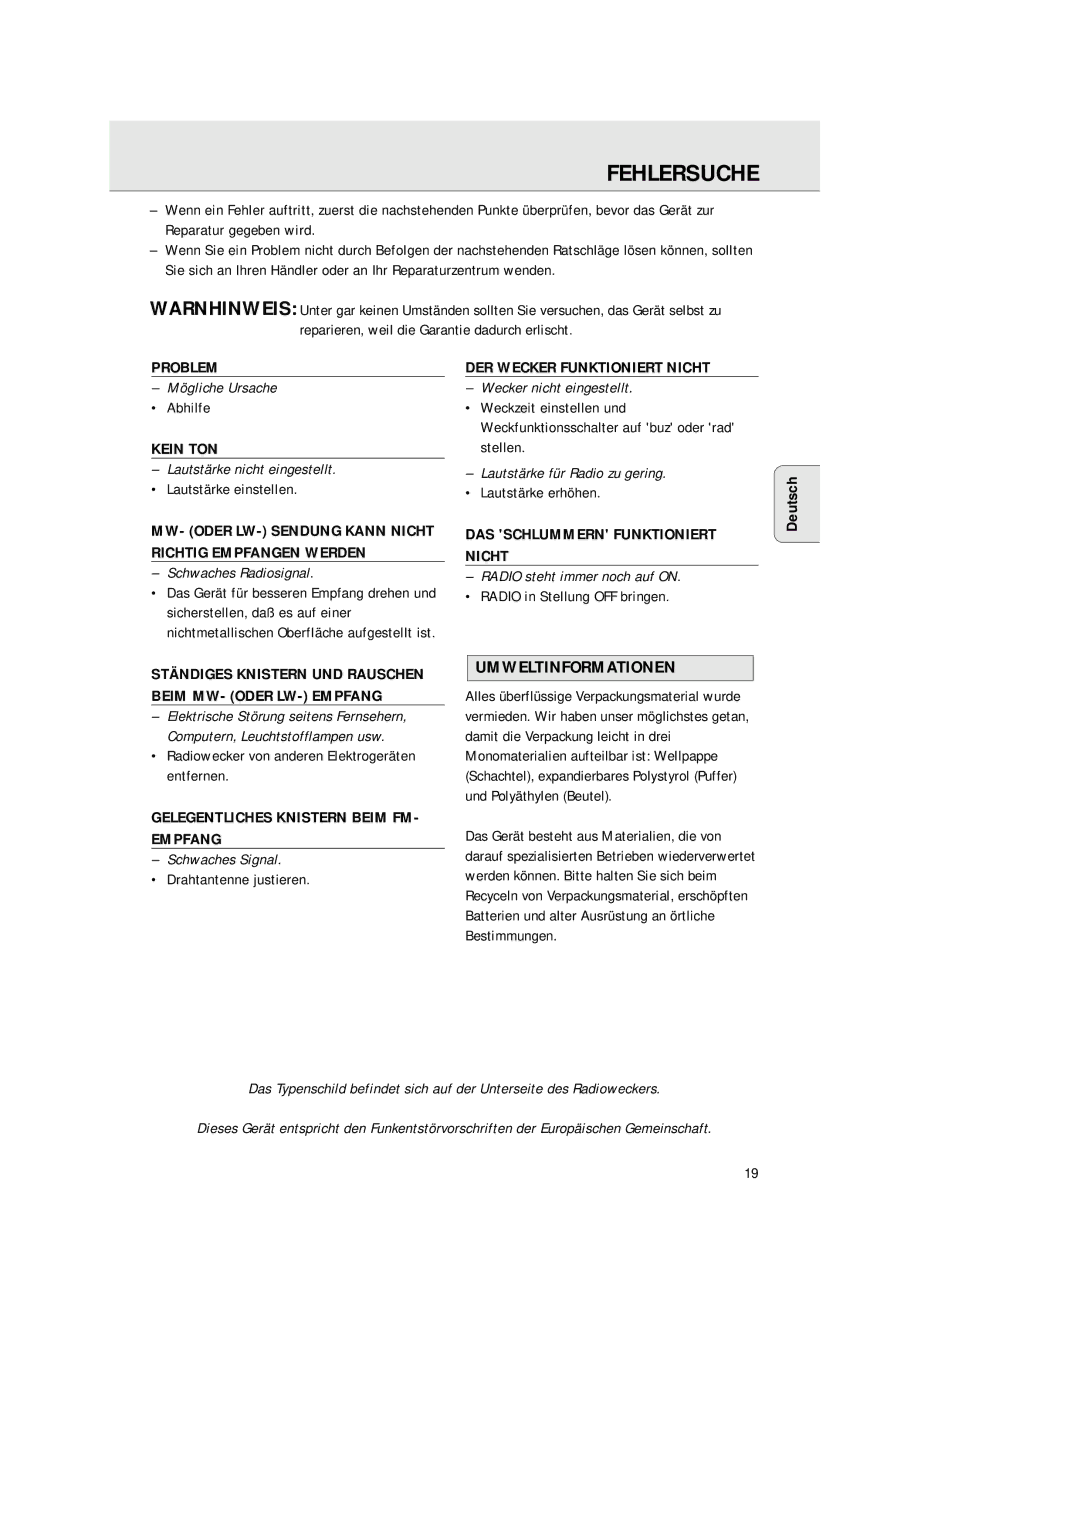 Philips AJ 3380 manual Fehlersuche, Umweltinformationen 